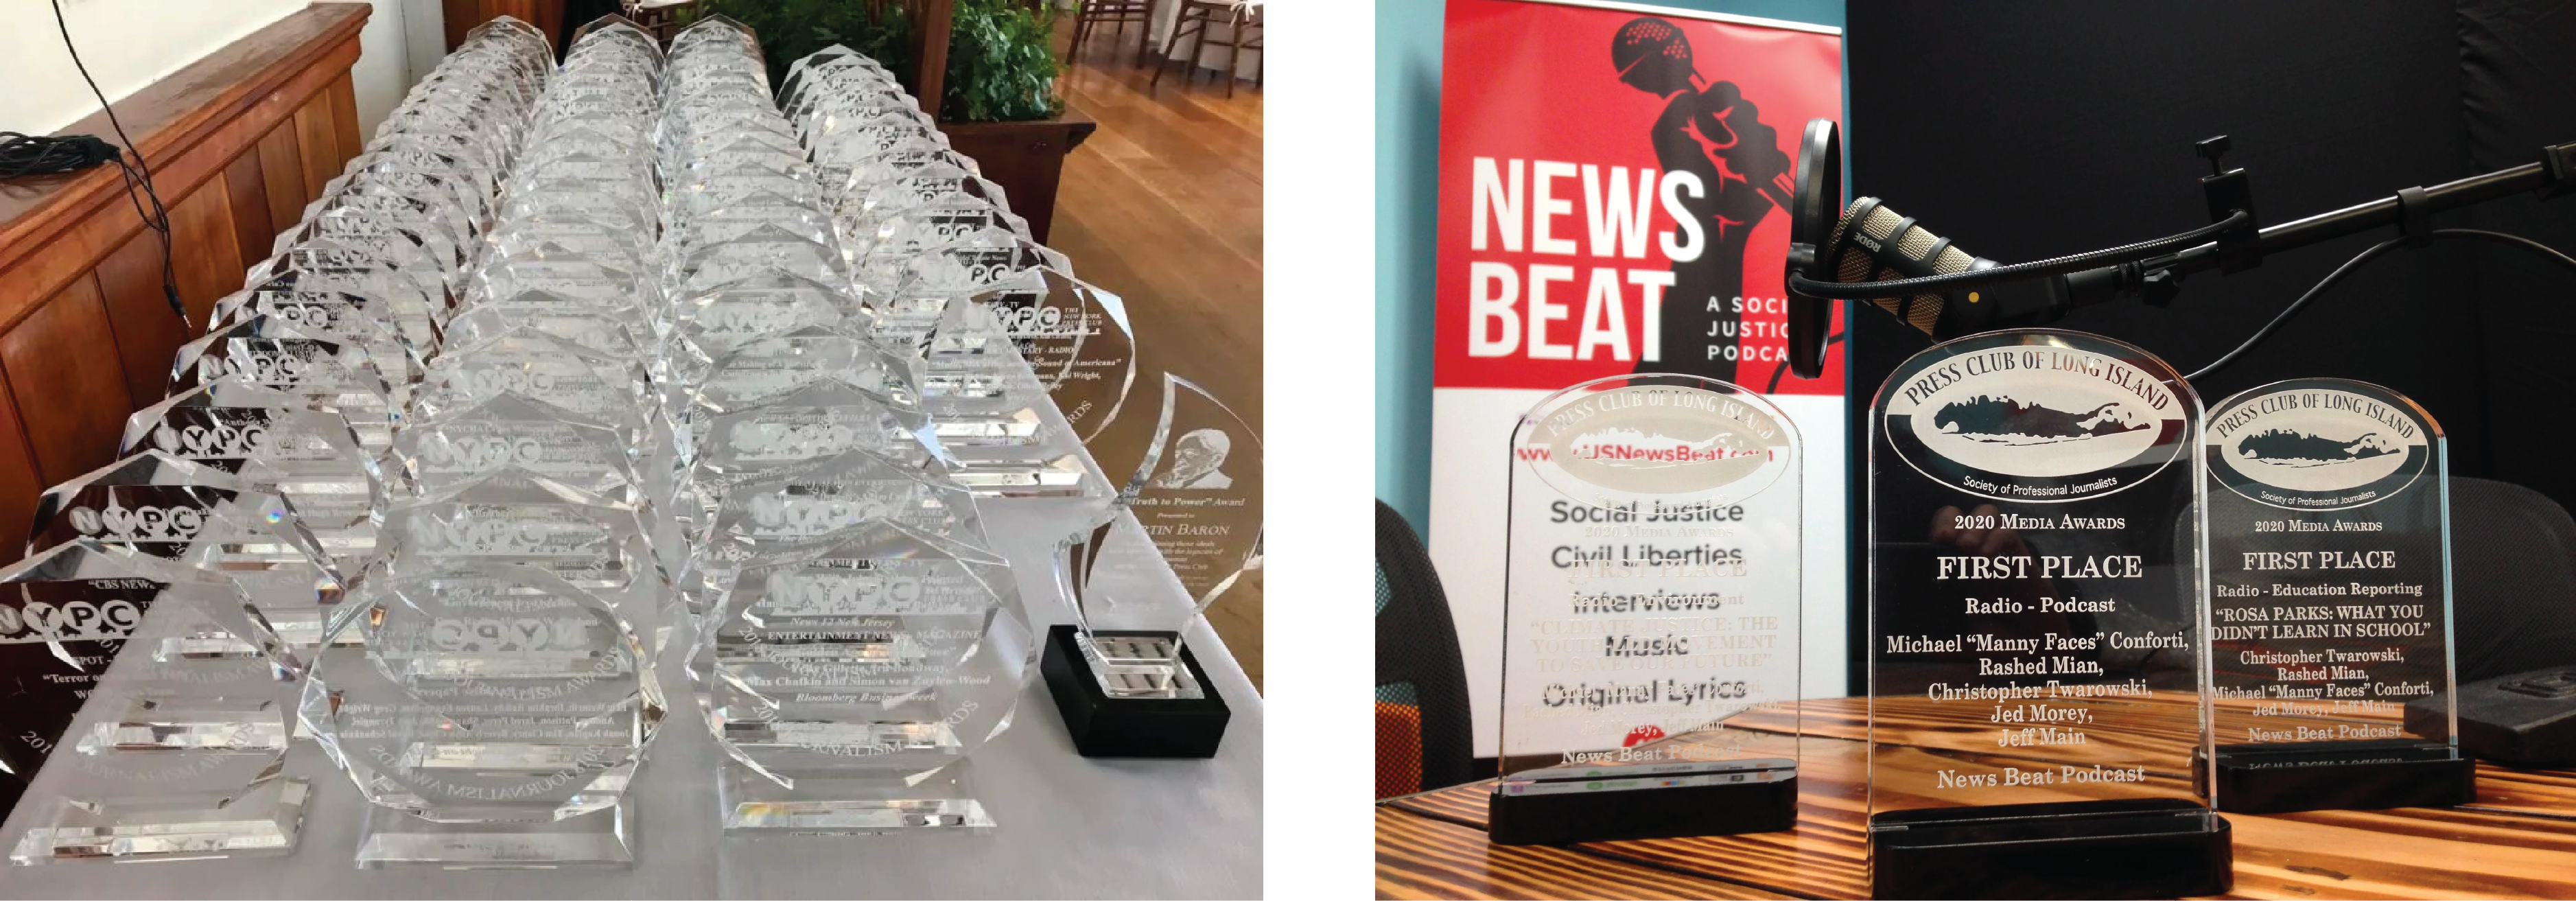 newsbeat-awards